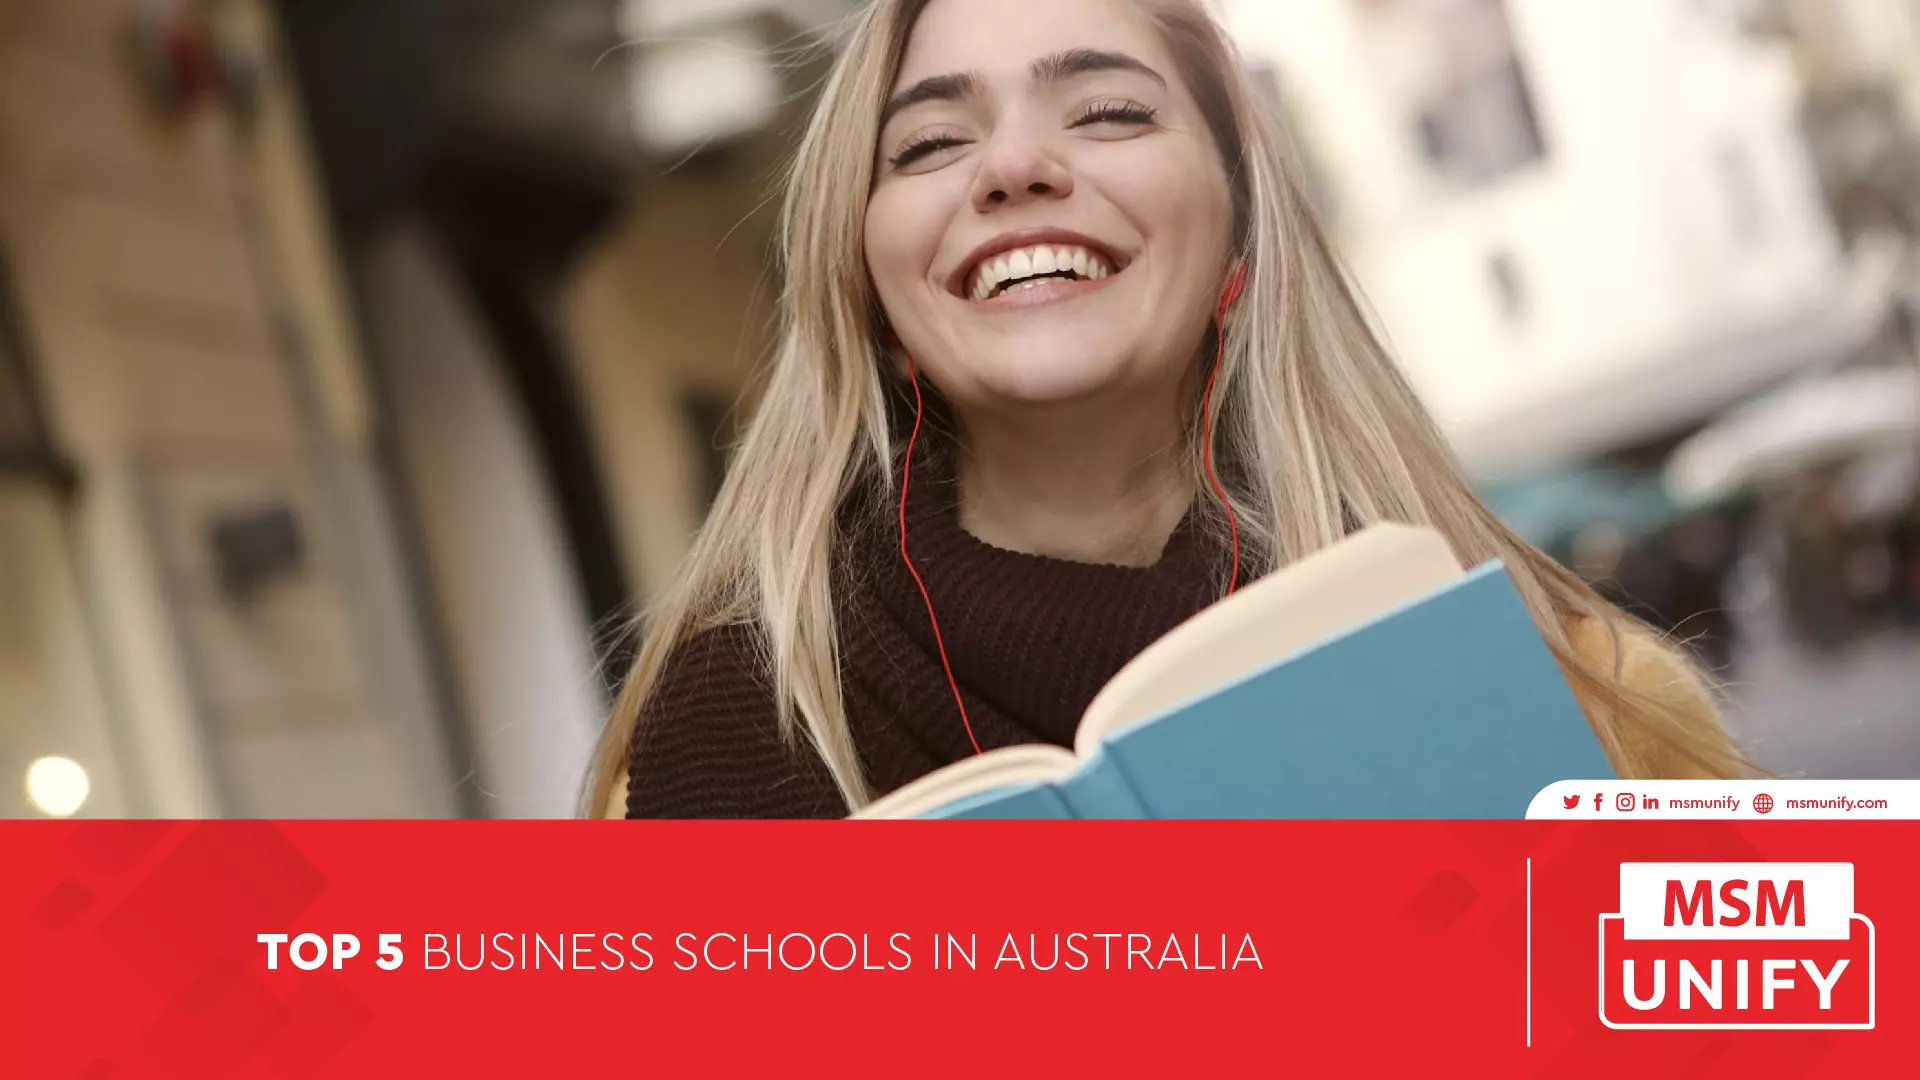 111122 MSM Unify Top 5 Business Schools in Australia 01